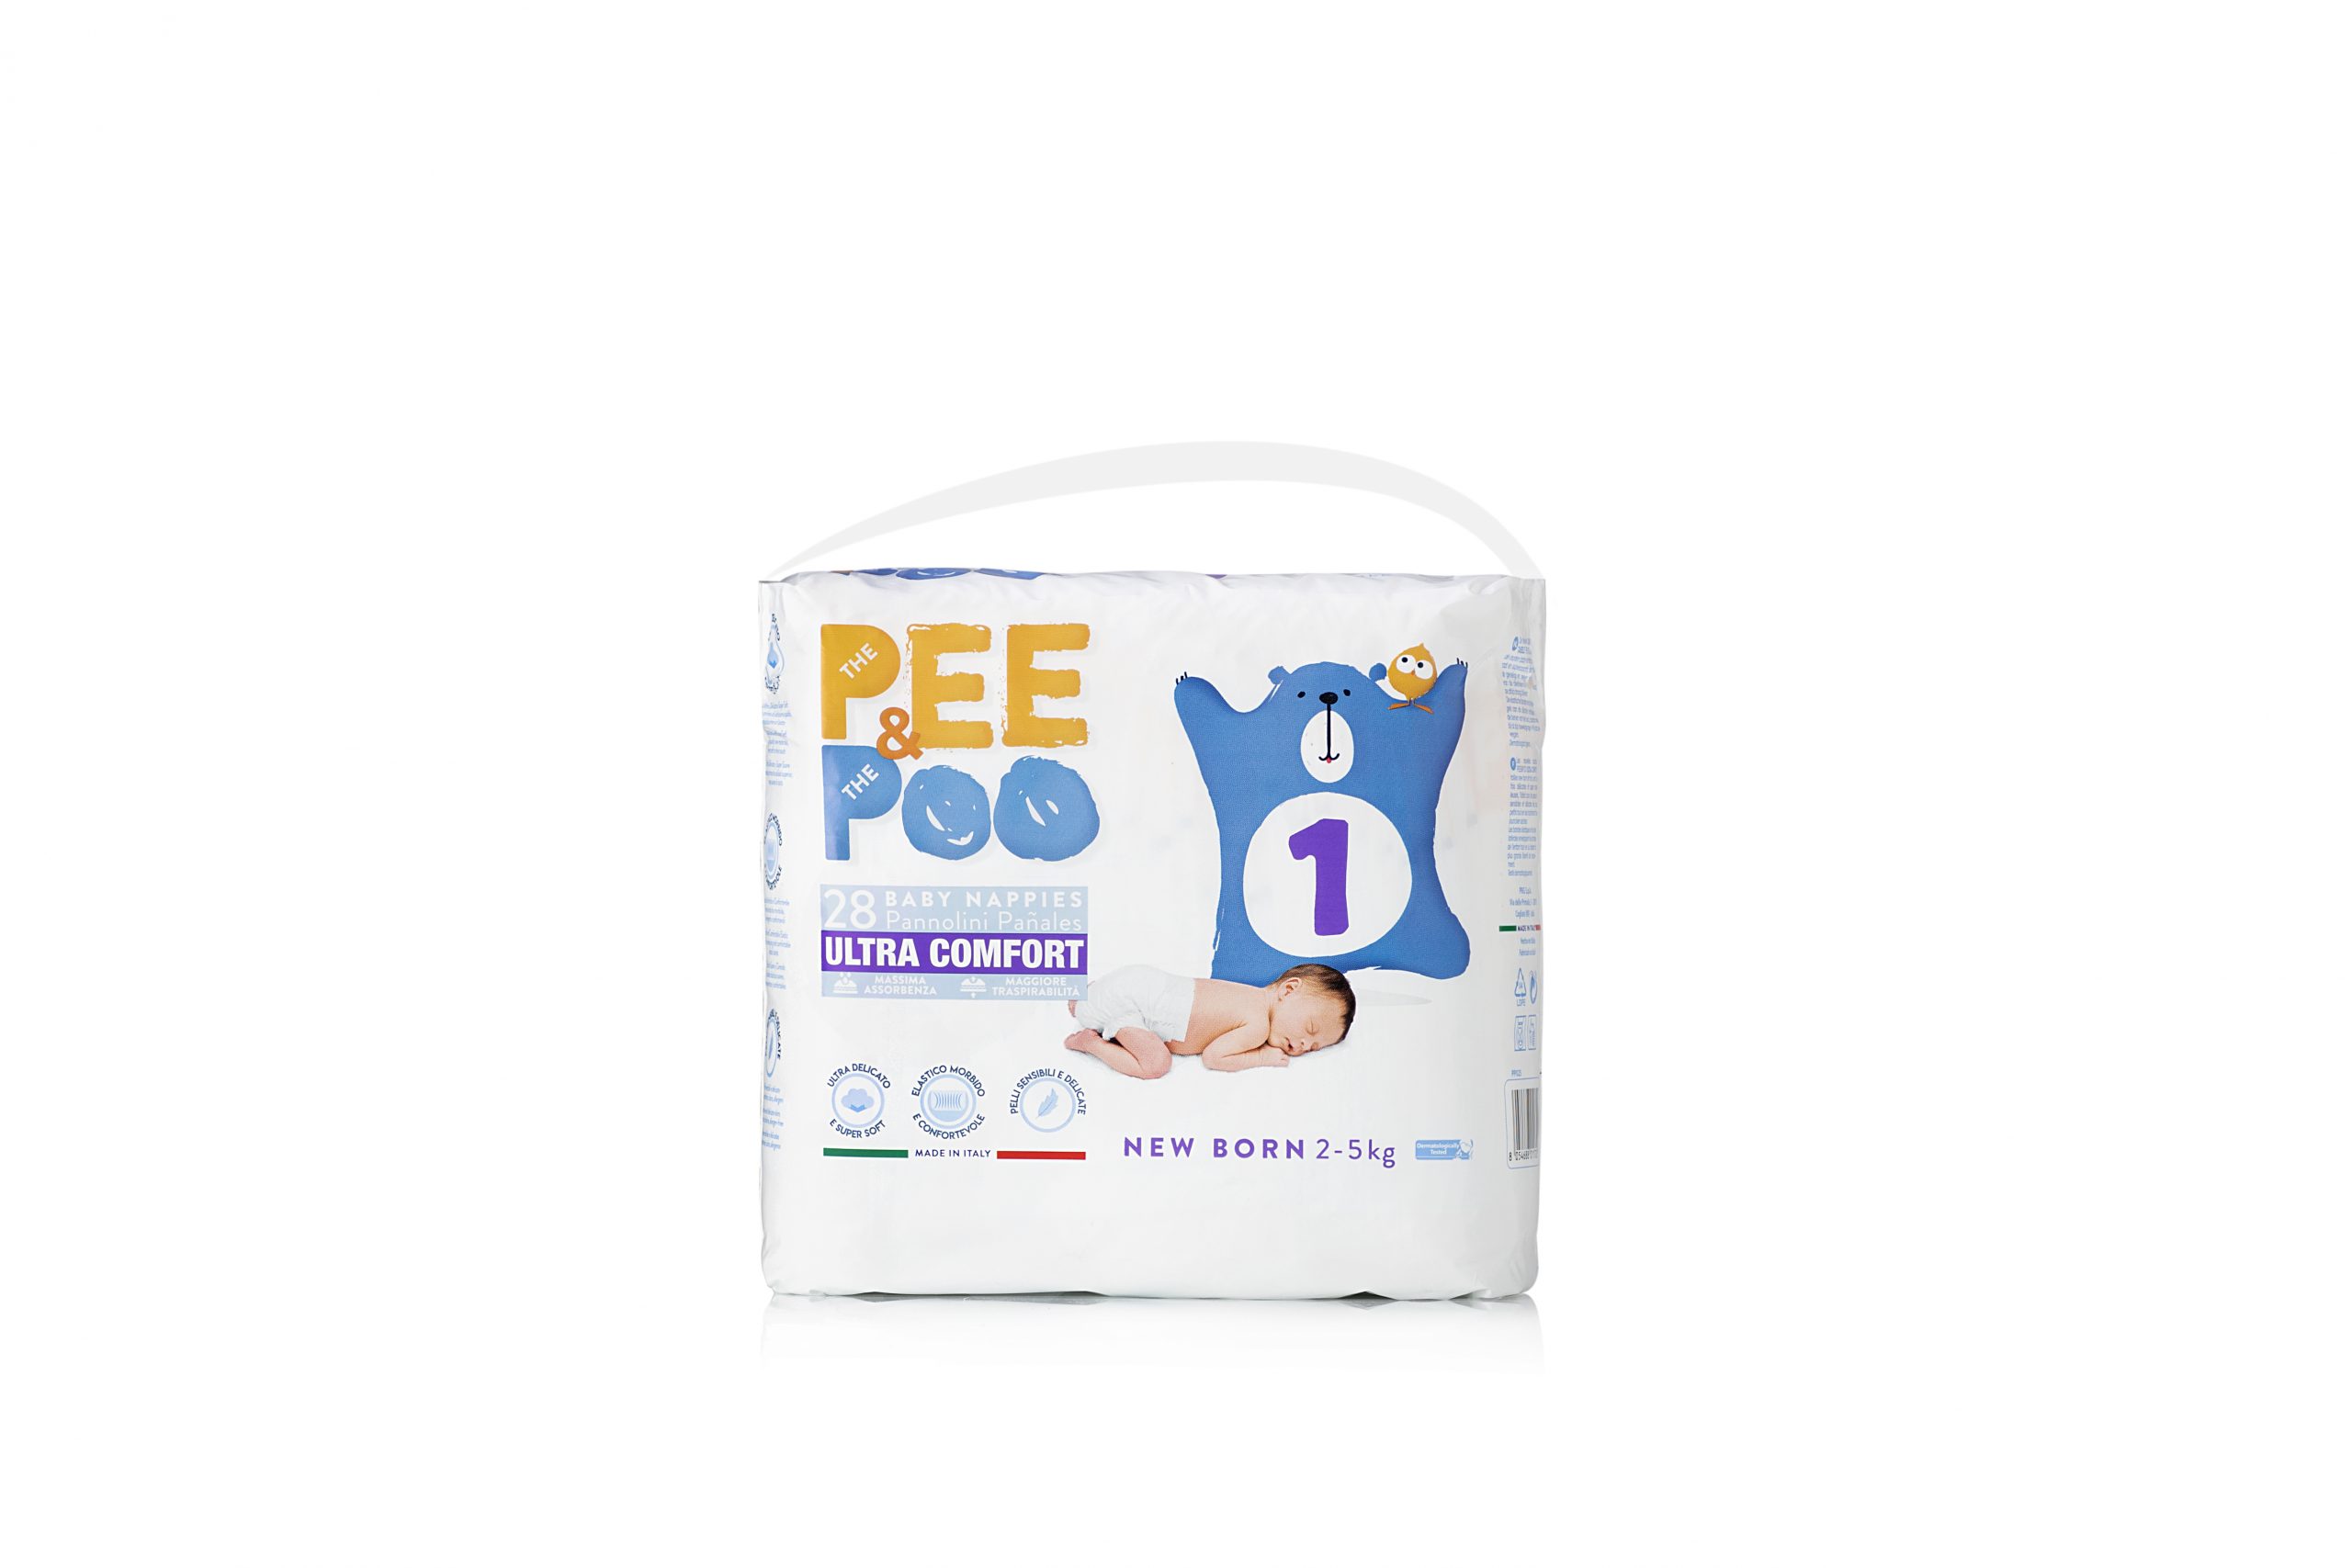 Pee&poo new born taglia 1 - 28 pz - 